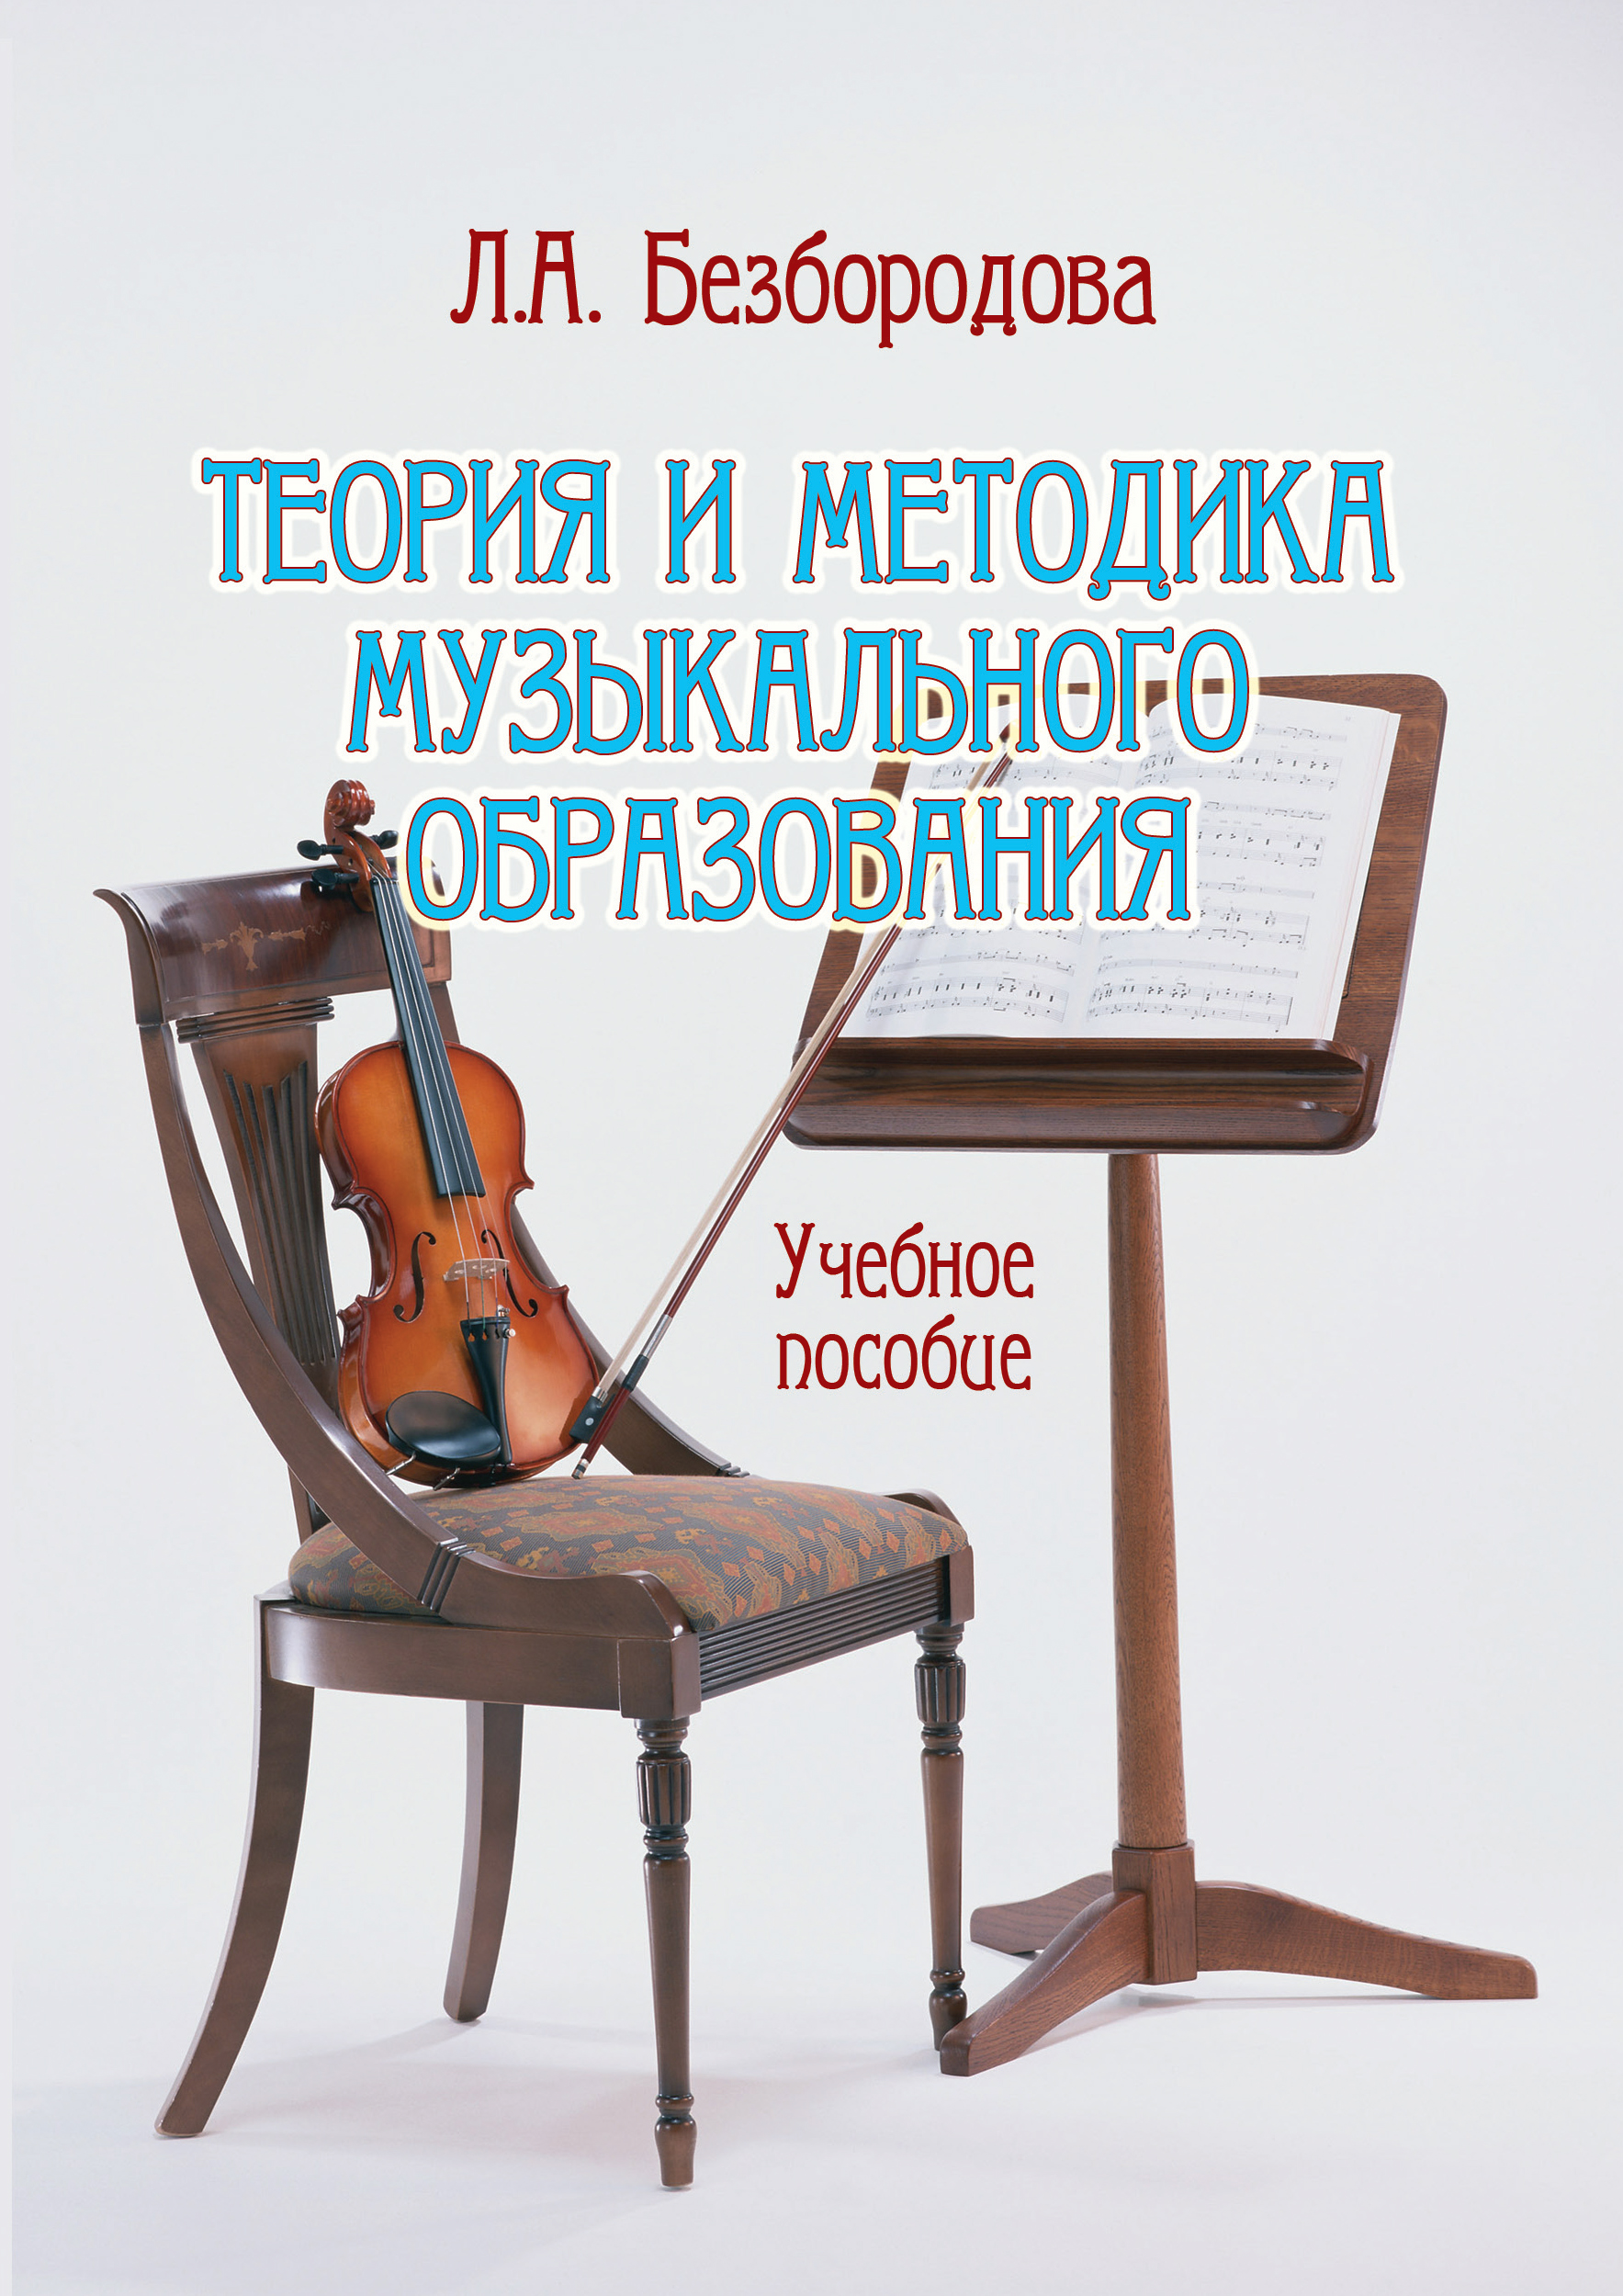 Методика музыкального образования